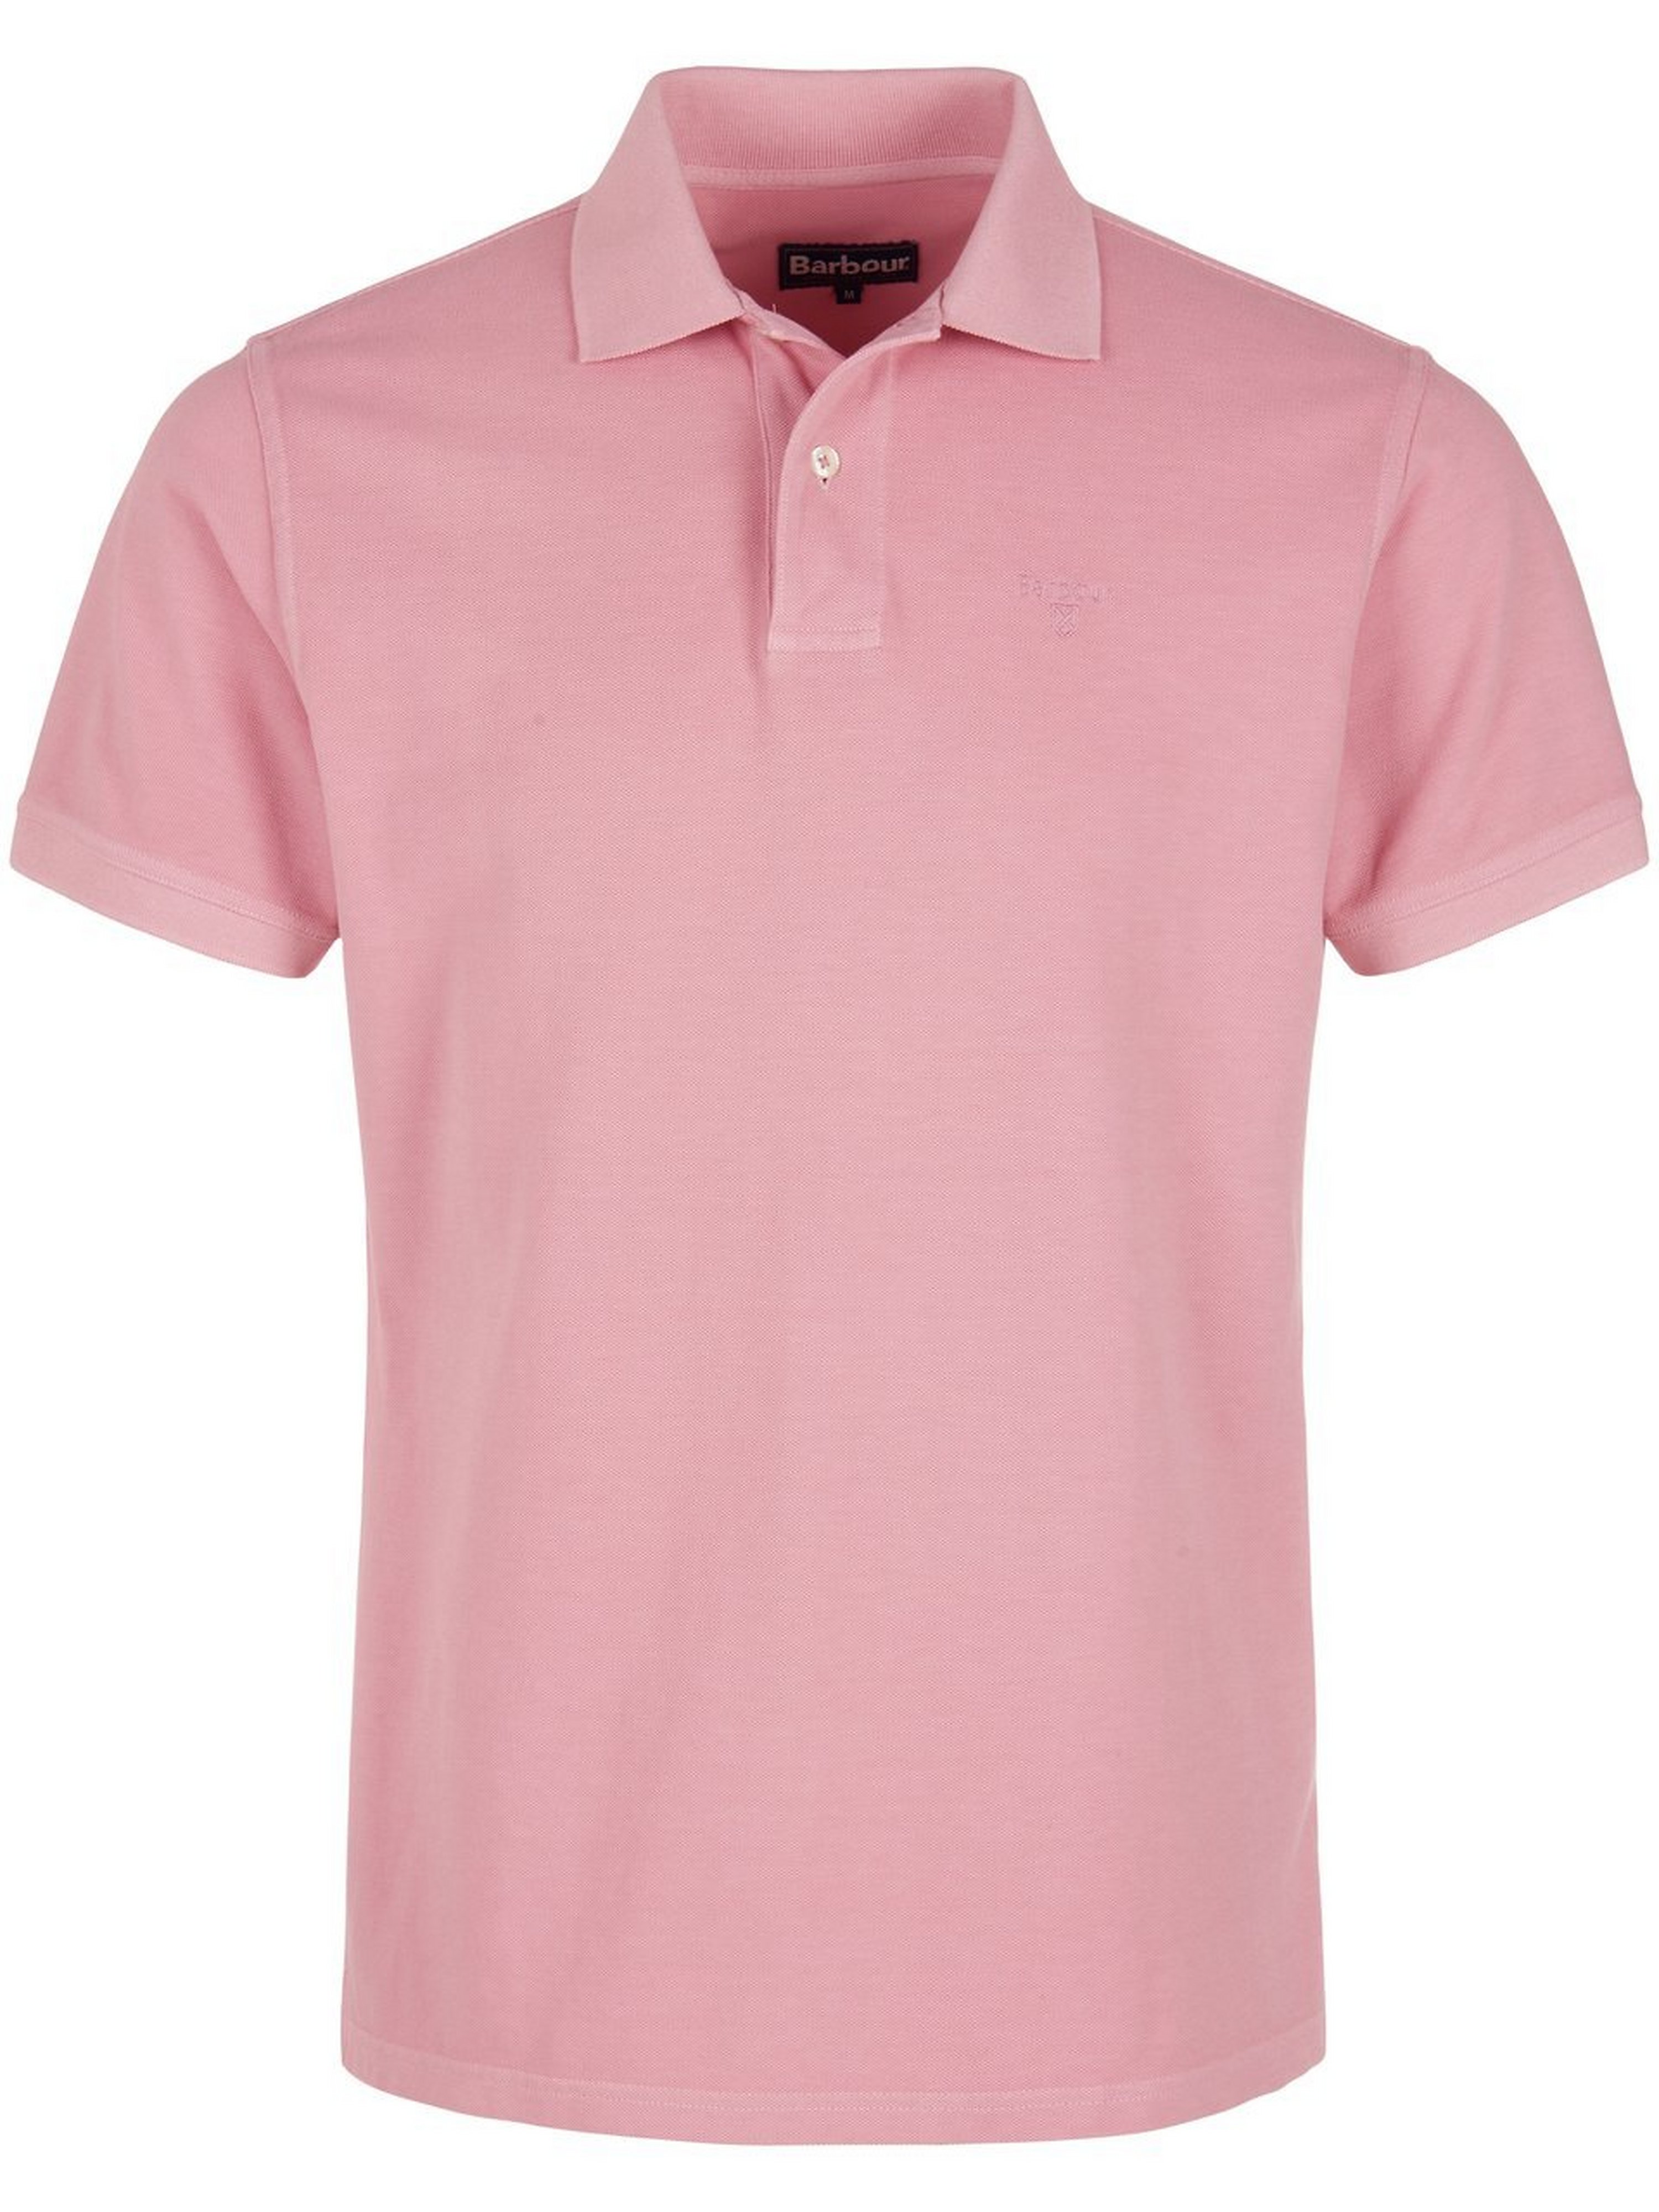 Poloshirt Van Barbour pink